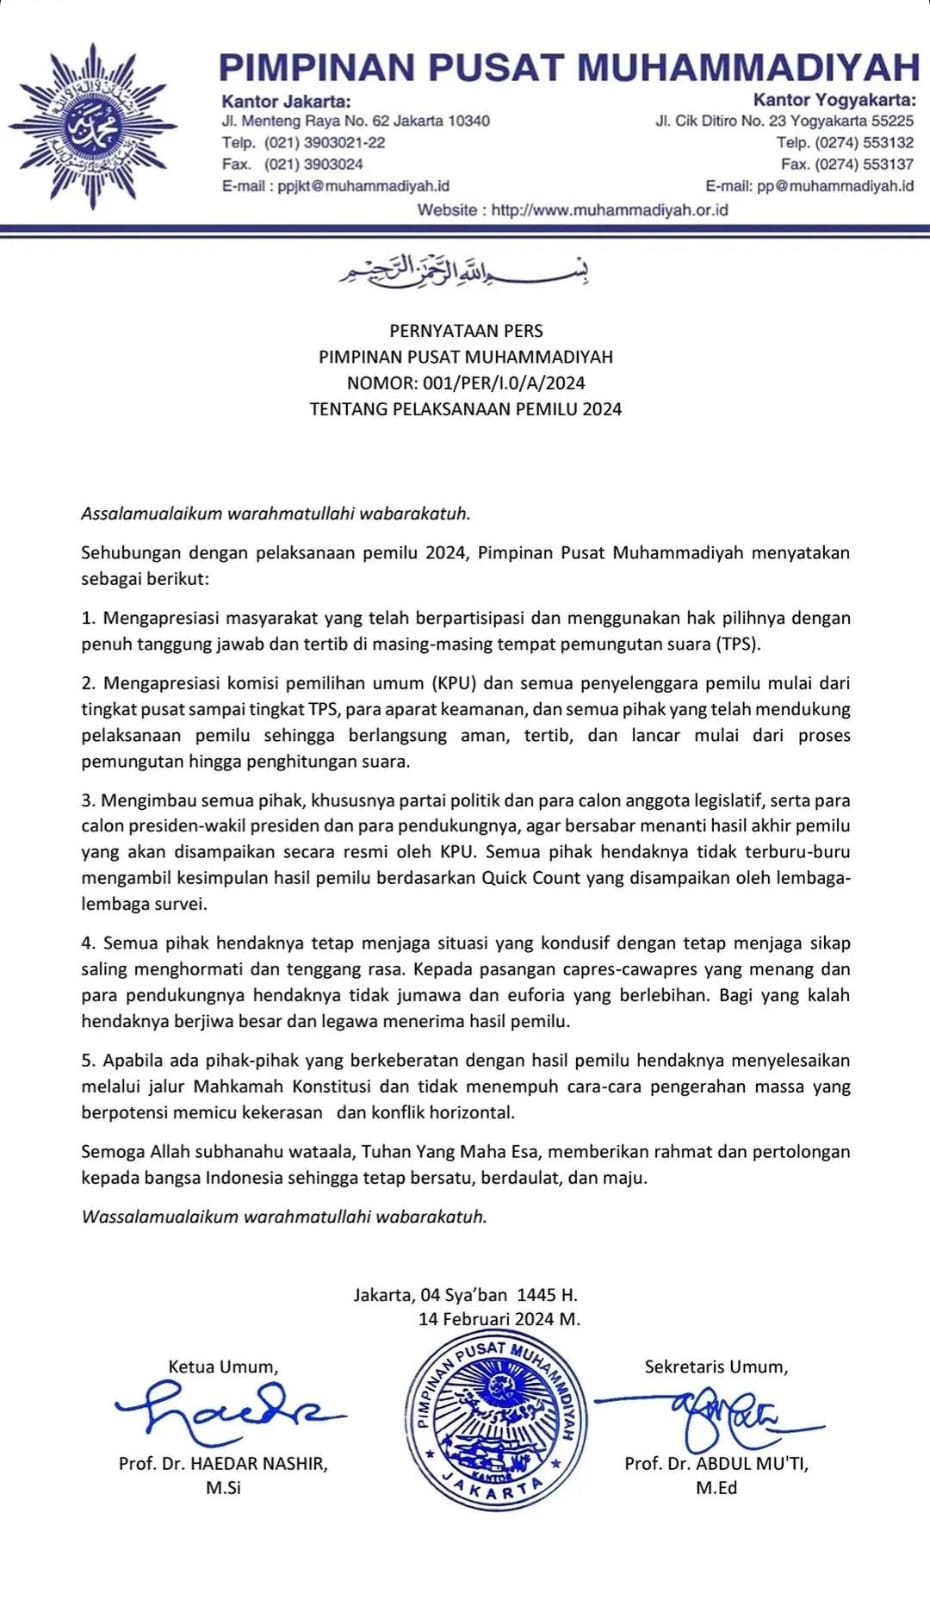 Surat Pernyataan Pers Pimpinan Pusat Muhammadiyah Terkait Pemilu 2024